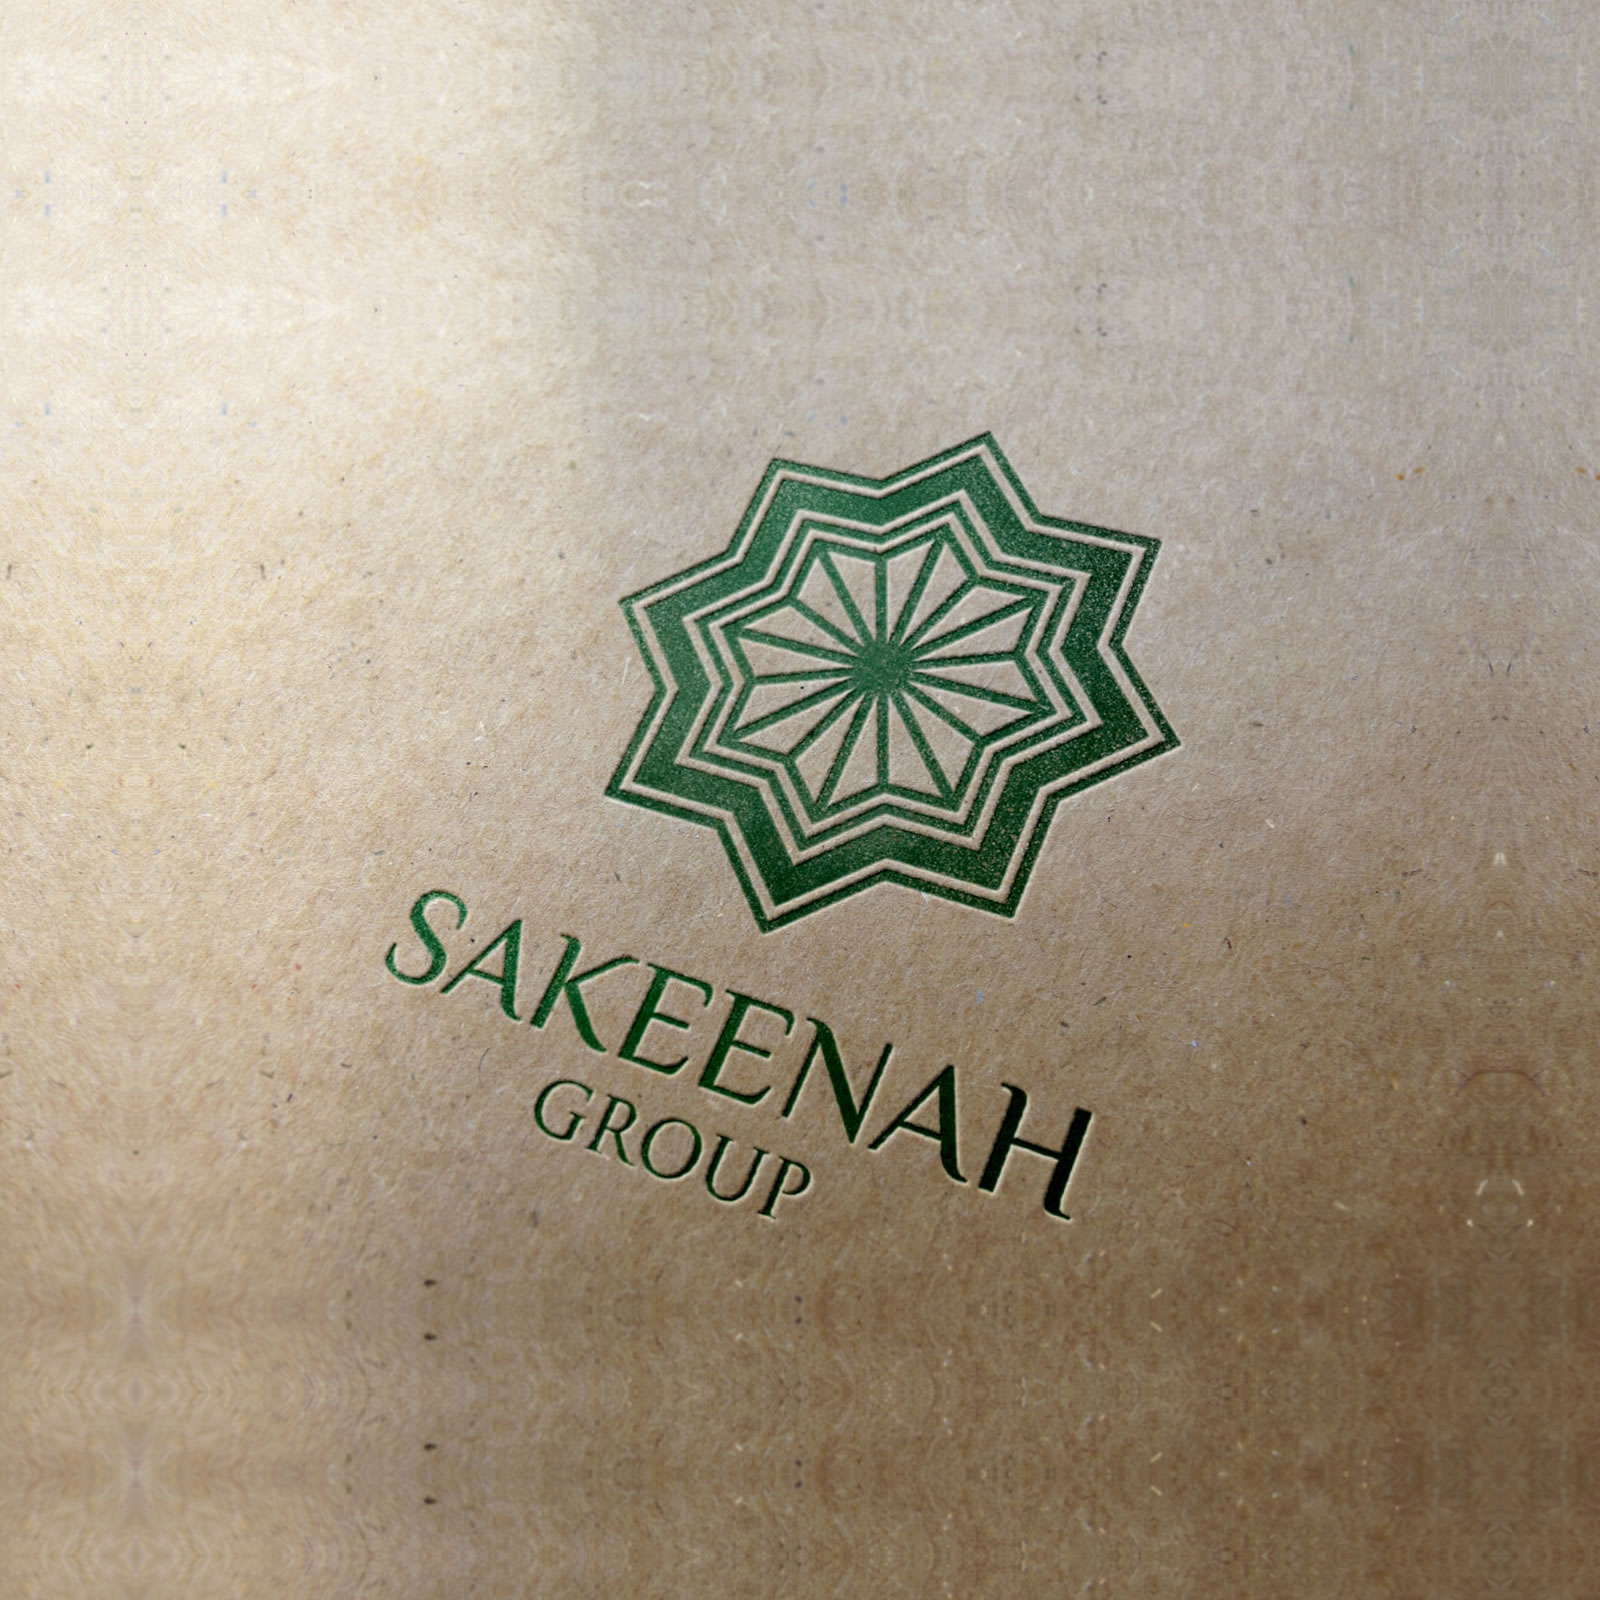 Sakeenah Group